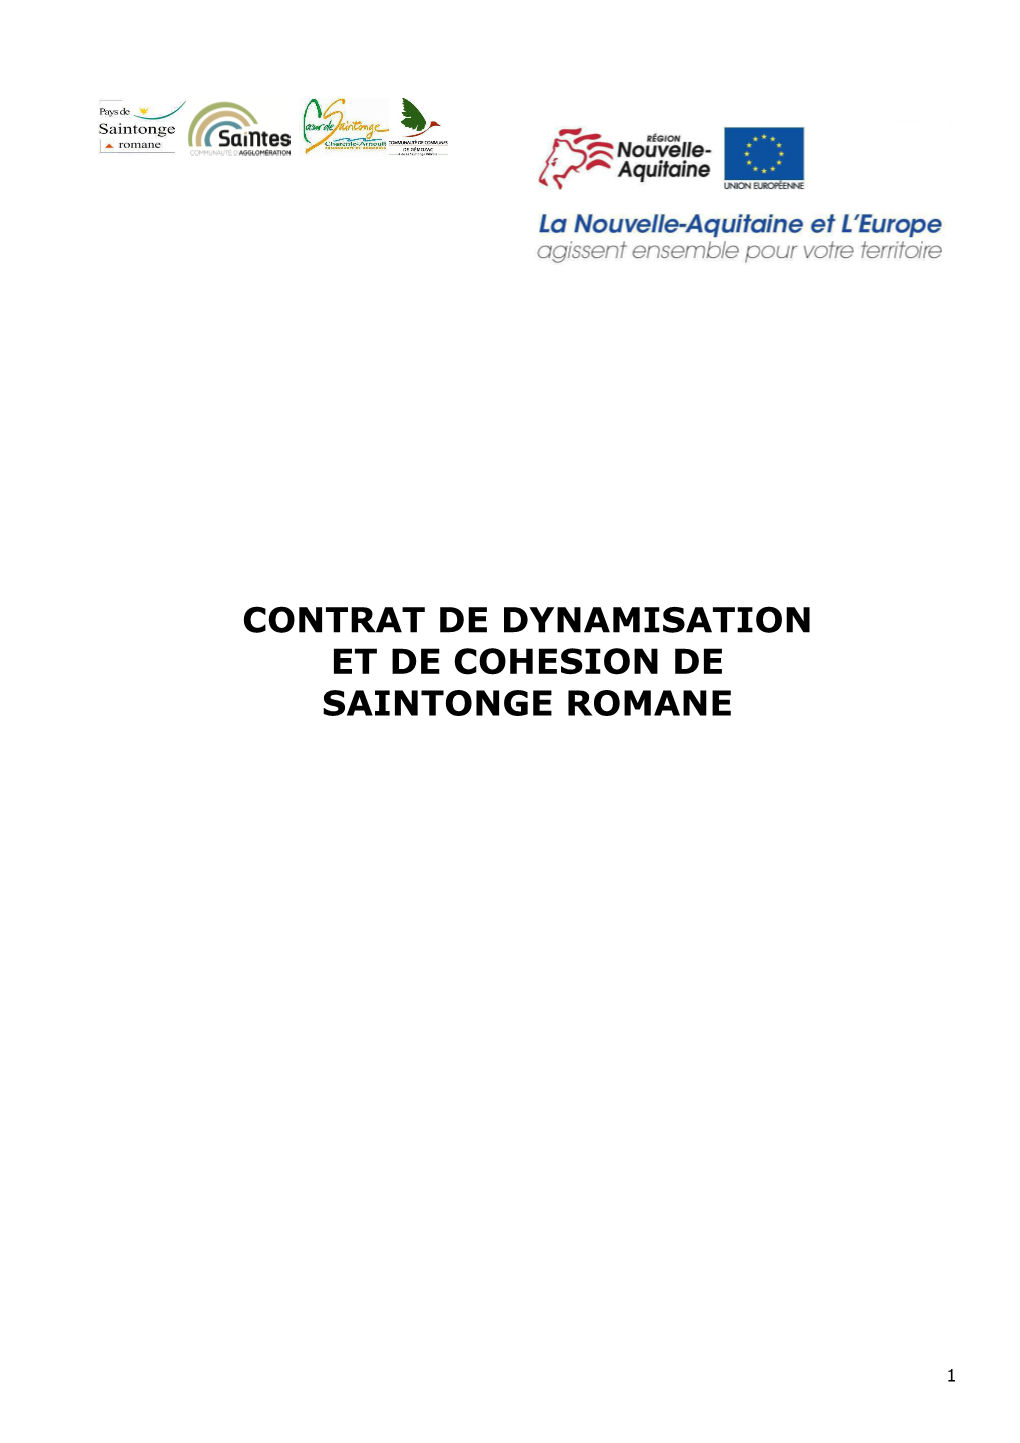 Contrat De Dynamisation Et De Cohesion De Saintonge Romane